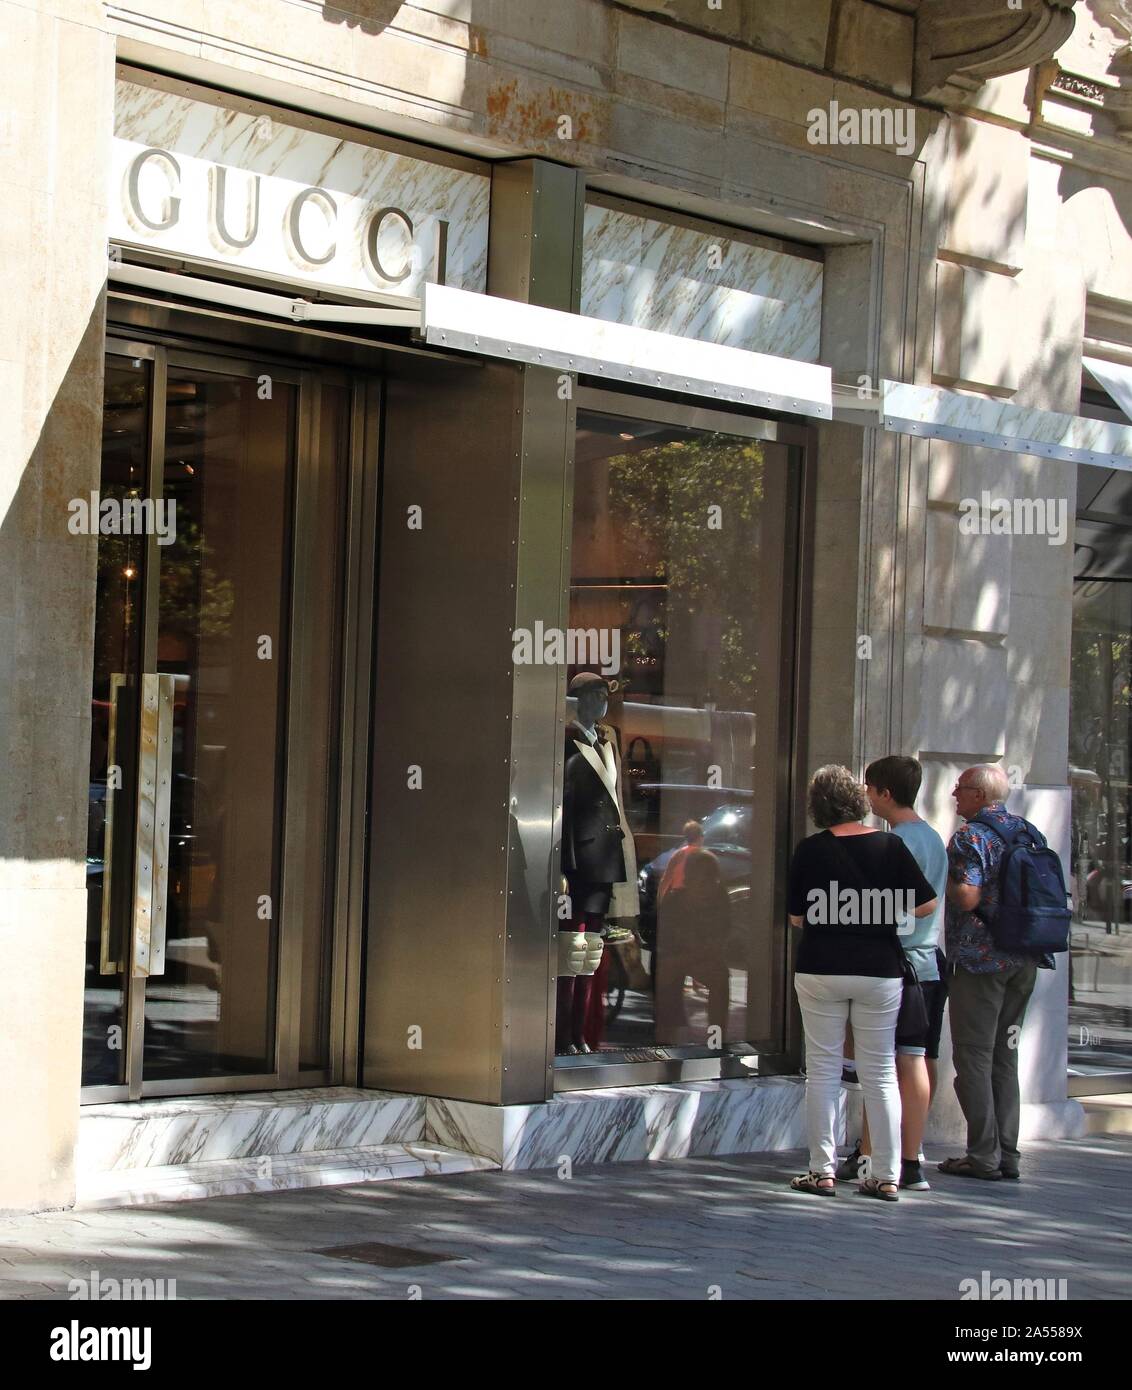 Gucci store in seen Paseo de Gracia, Barcelona Stock Photo - Alamy